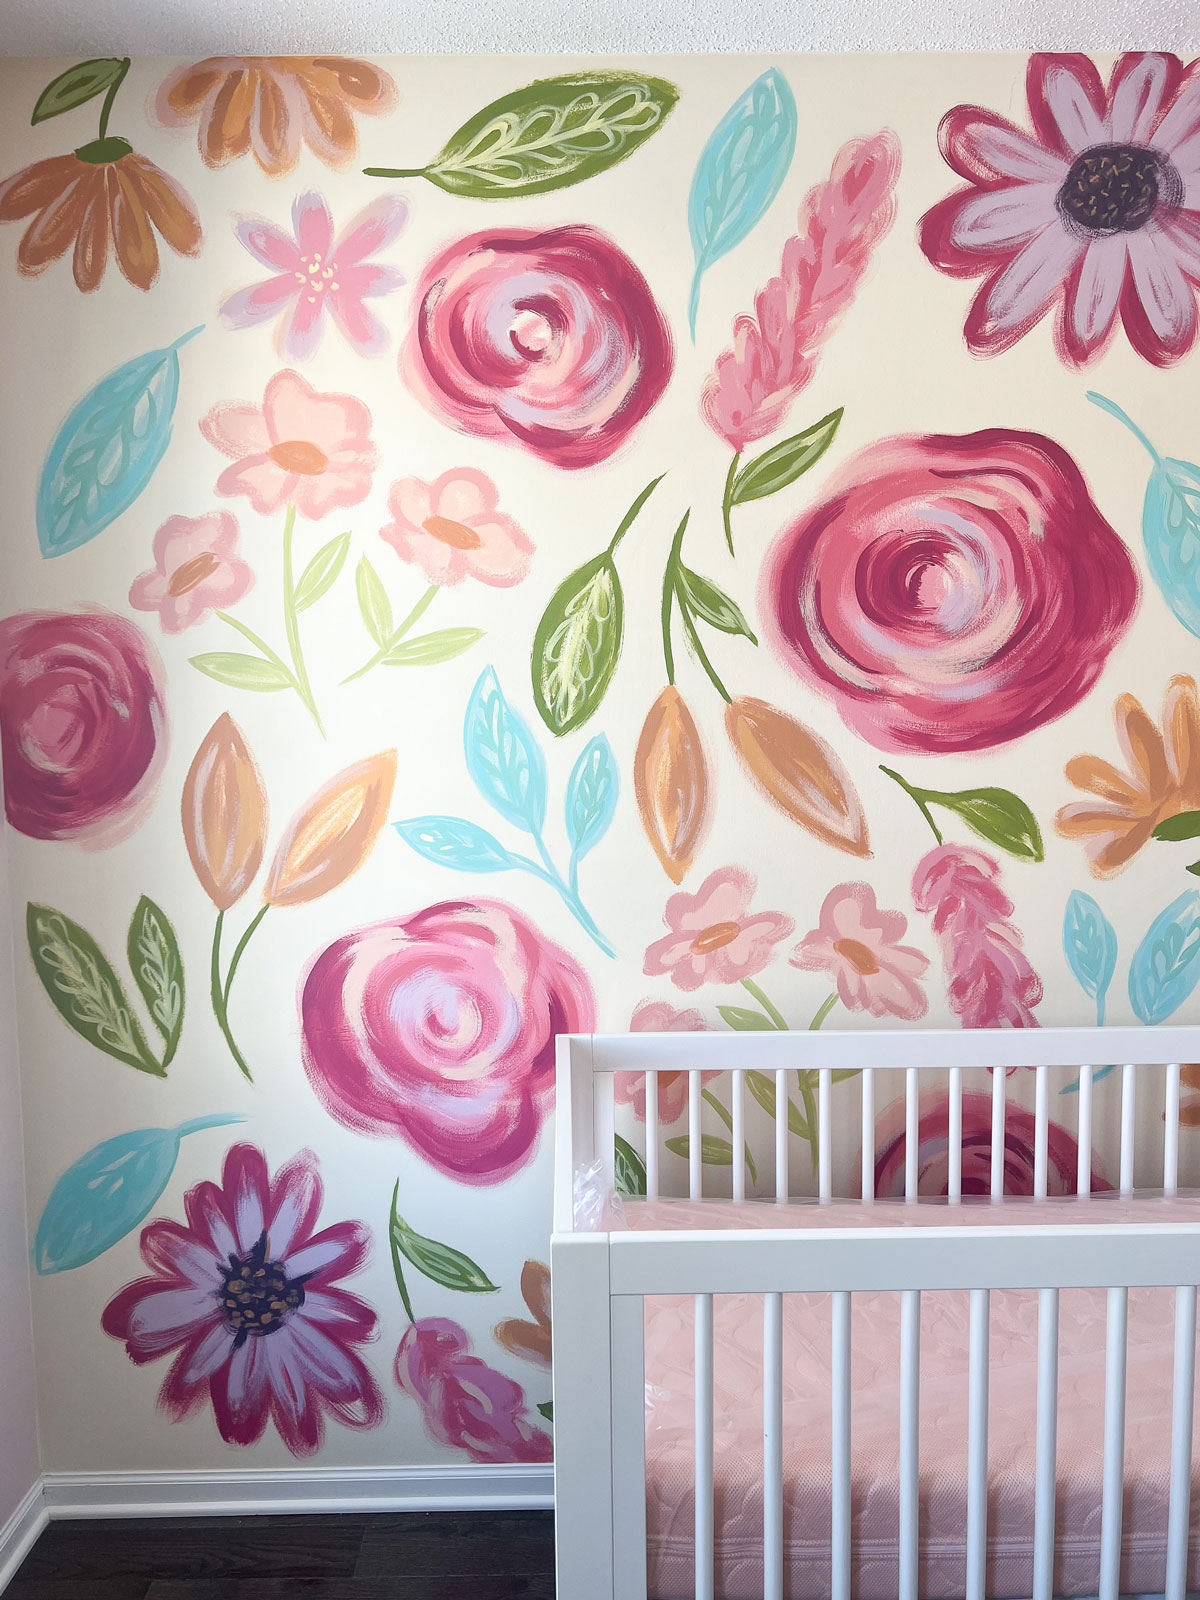 Floral wall mural, floral nursery mural, nursery room decor, painted floral mural, painted wall mural, floral wall mural baby room, baby room decor floral